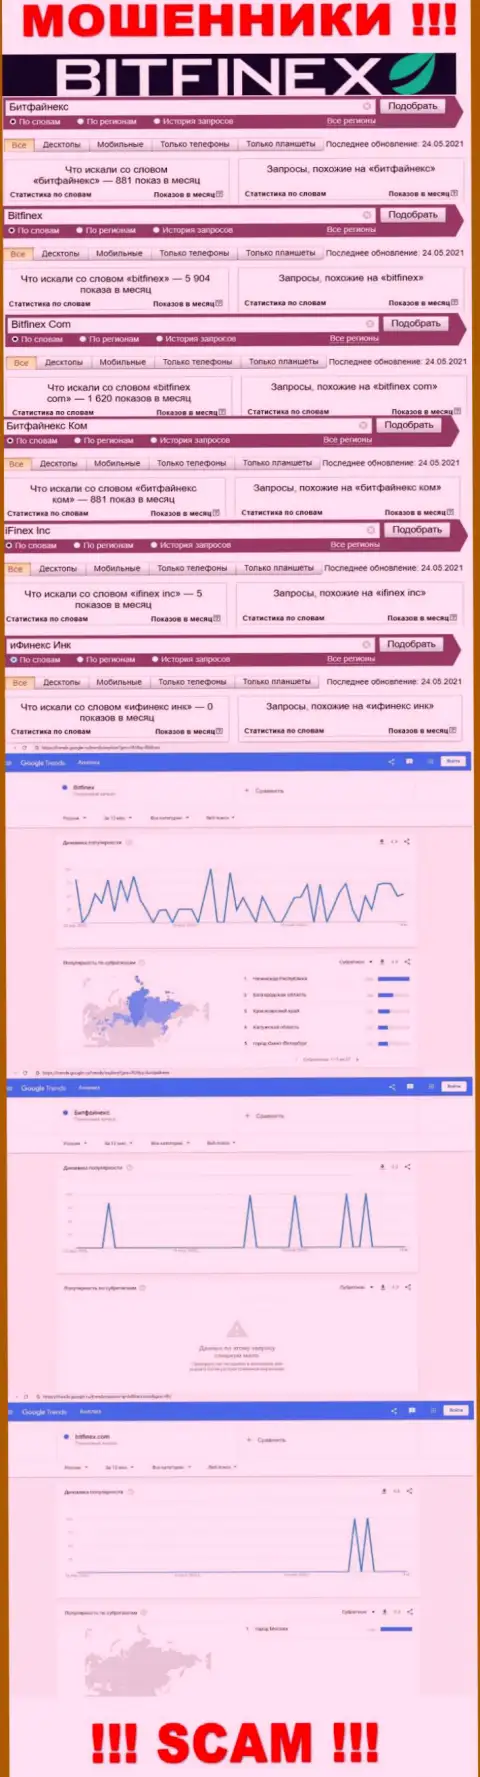 Количество поисковых запросов в поисковых системах по бренду лохотронщиков Битфайнекс